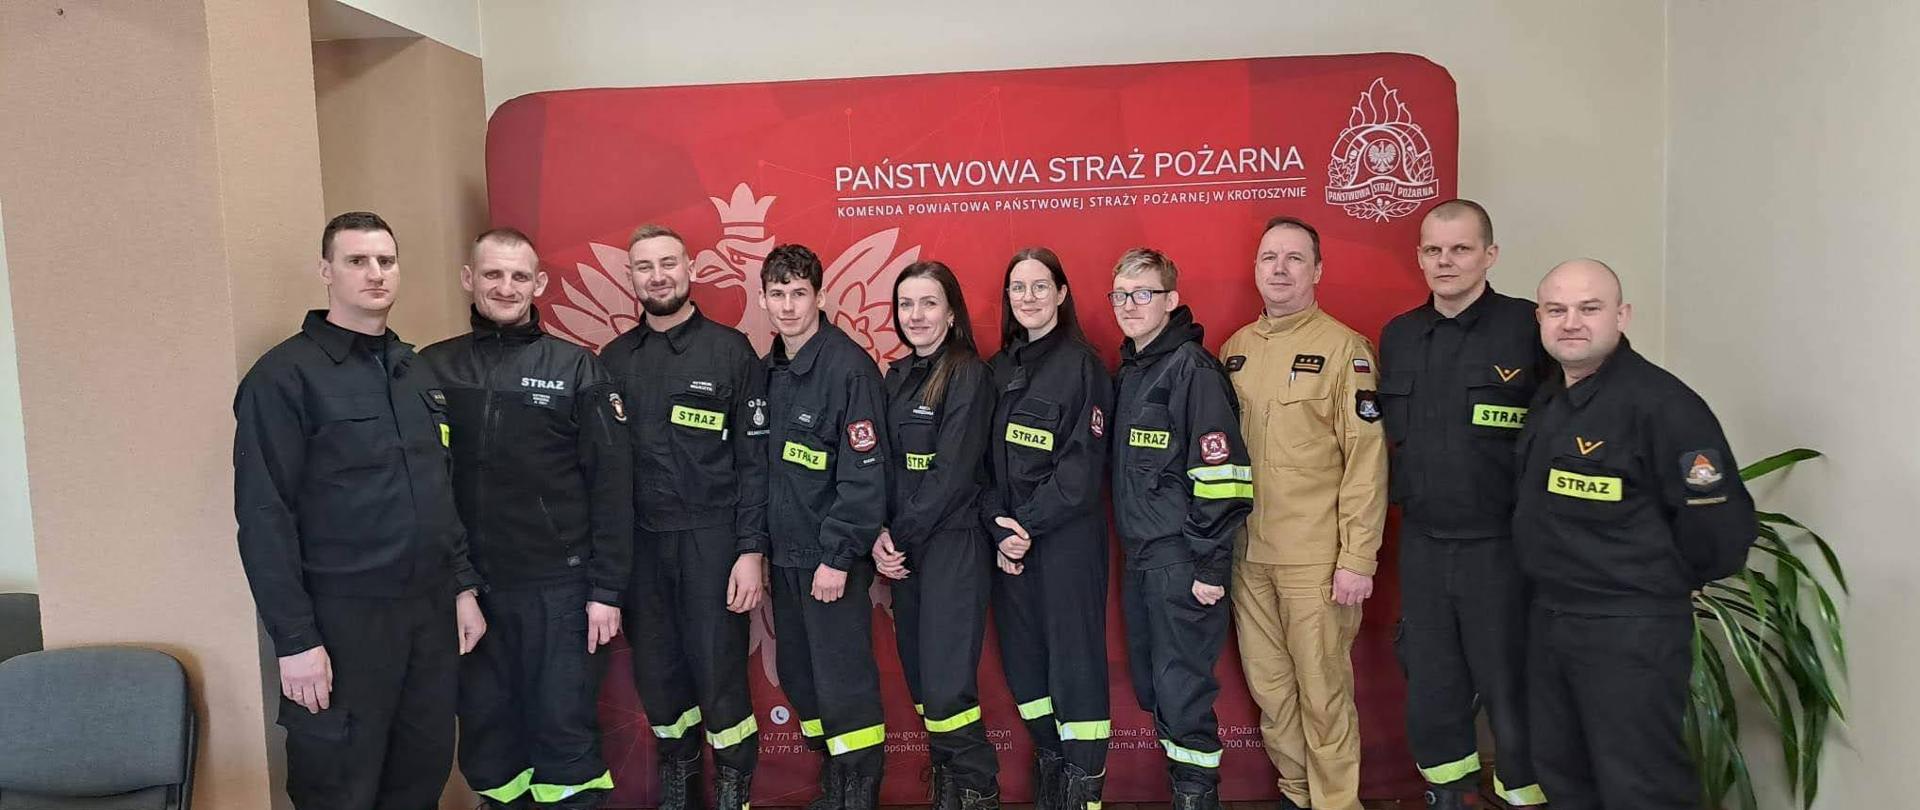 Zdjęcie grupowe na tle baneru komendy powiatowej absolwentów szkolenia z zakresu kwalifikowanej pierwszej pomocy z Komendantem Powiatowym PSP w Krotoszynie oraz członkami komisji egzaminacyjnej.